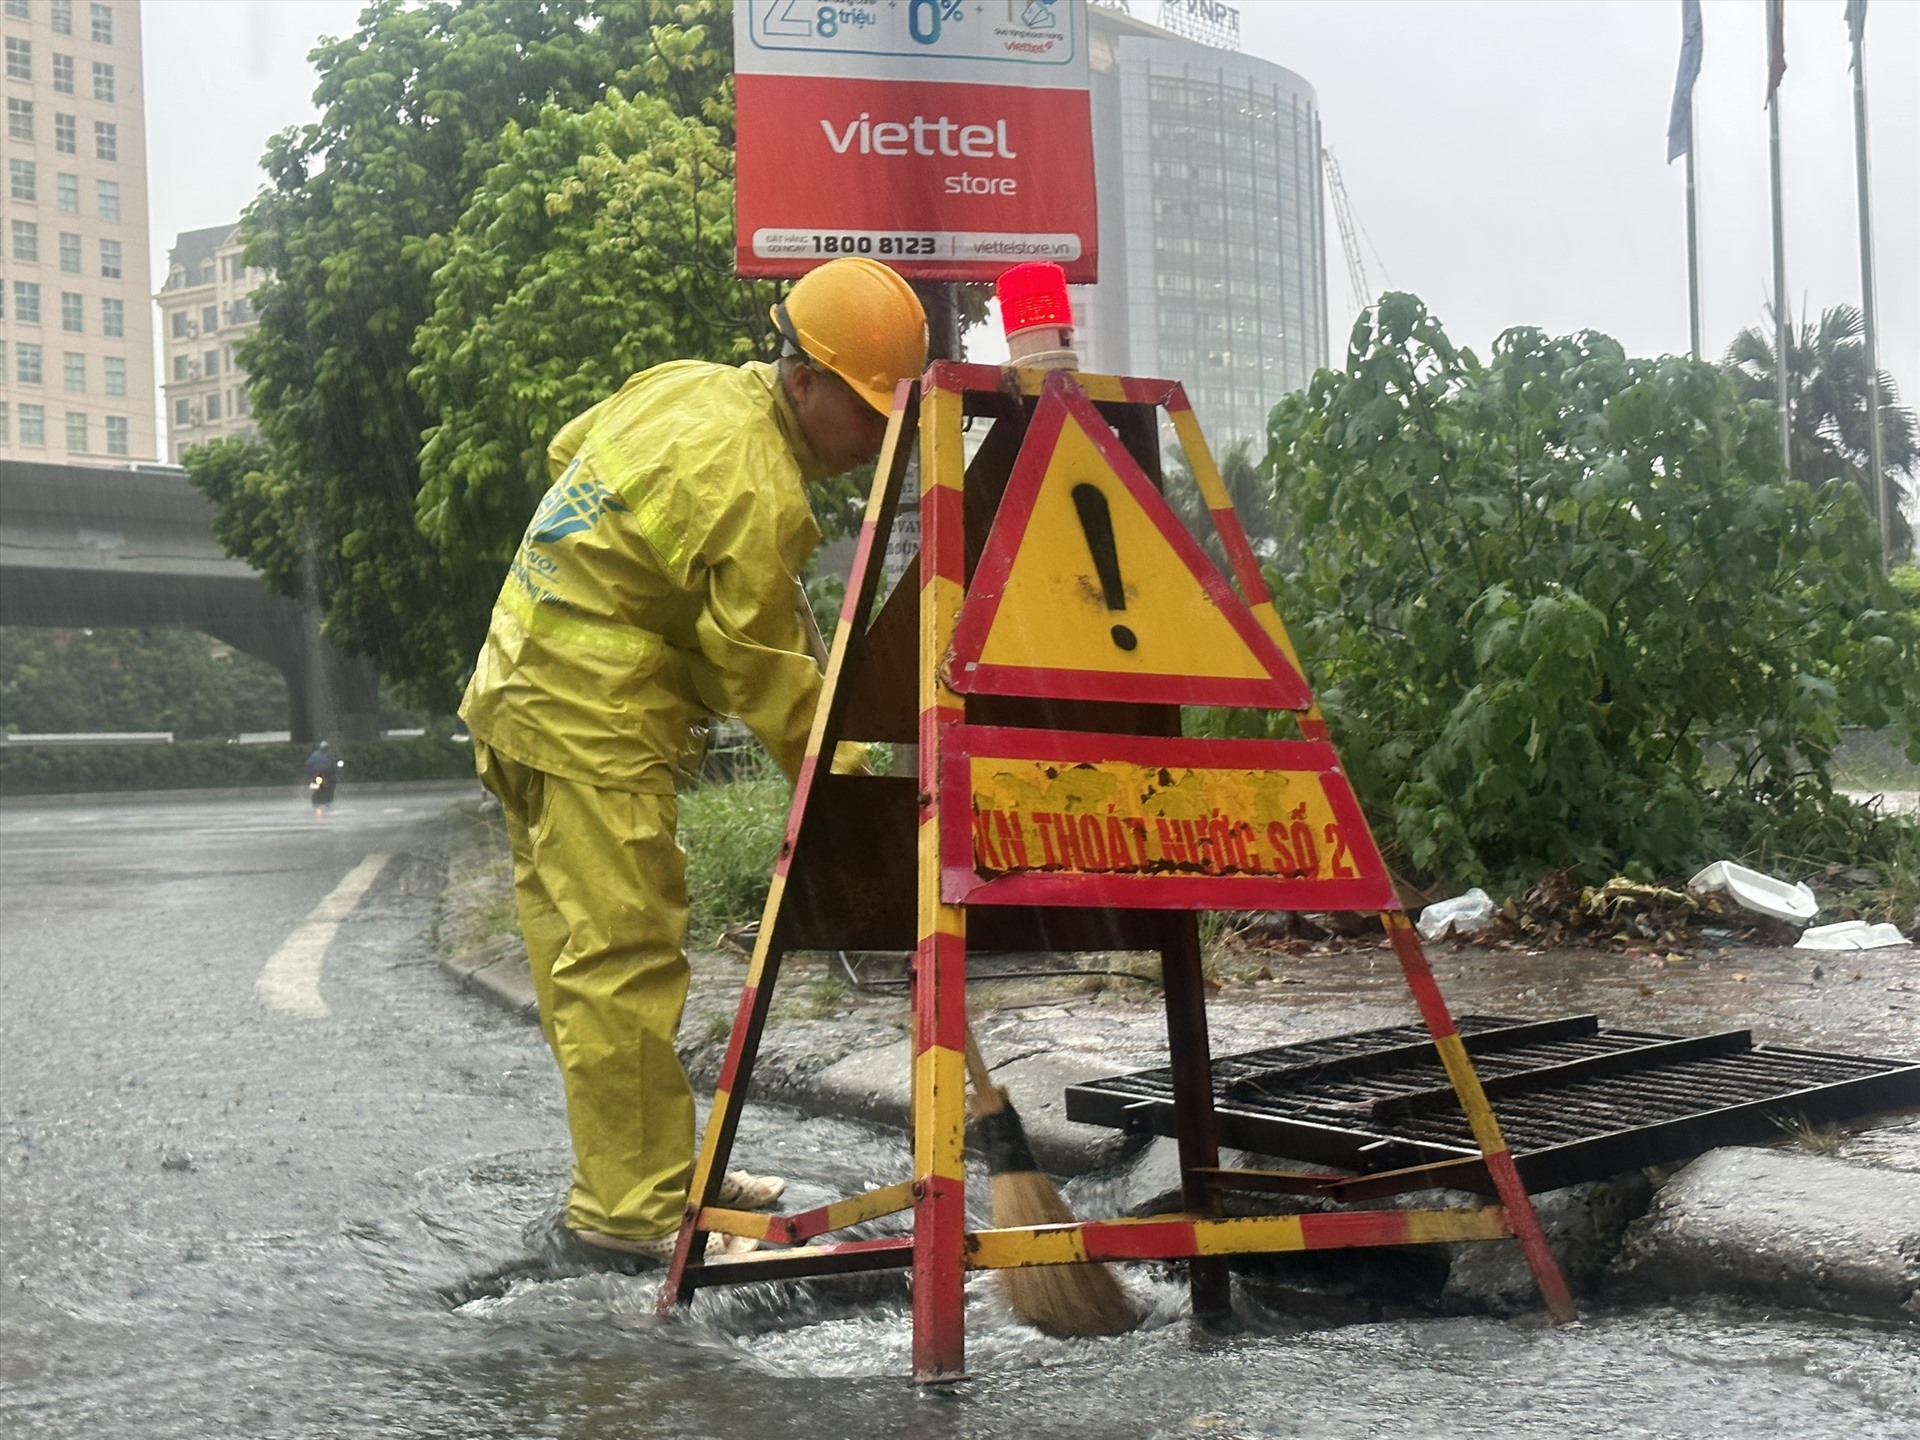 Dương Đình Nghệ (Cầu Giấy) cũng là một con phố thường xuyên xảy ra tình trạng ngập úng mỗi khi mưa lớn. Các công nhân thoát nước phải làm việc khá vất vả trong những ngày này. 